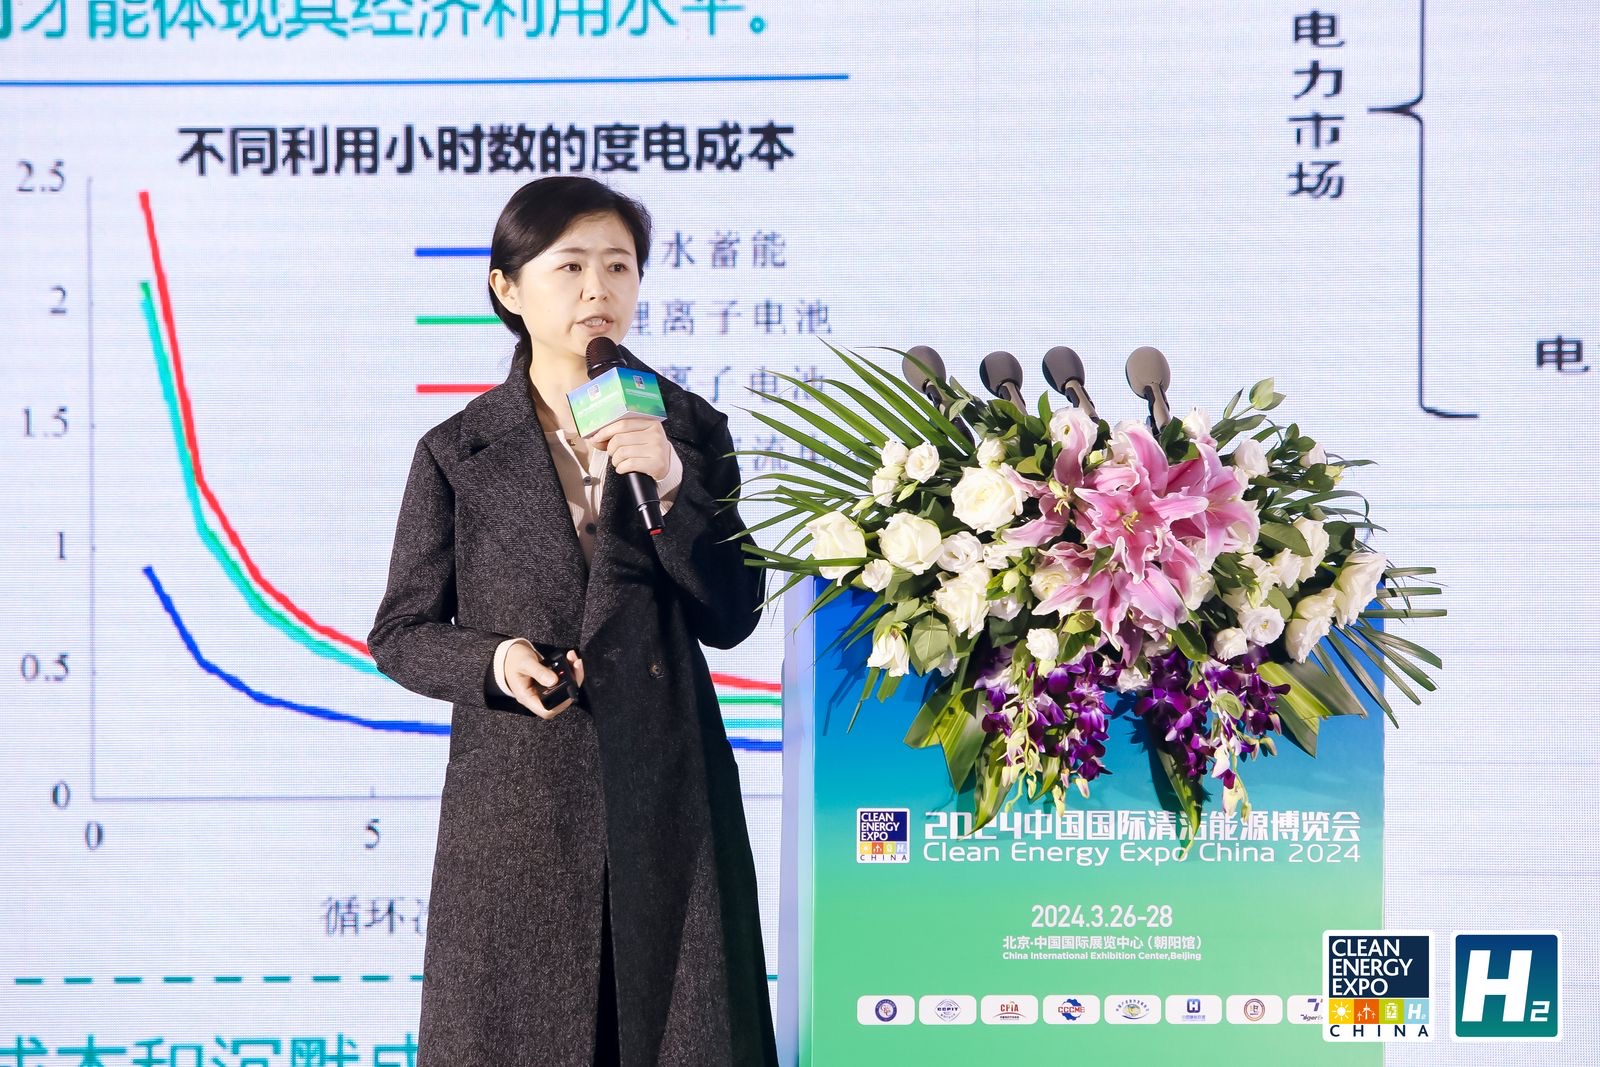 10中国电力科学研究院储能与电工所高级工程师 马会萌.JPG